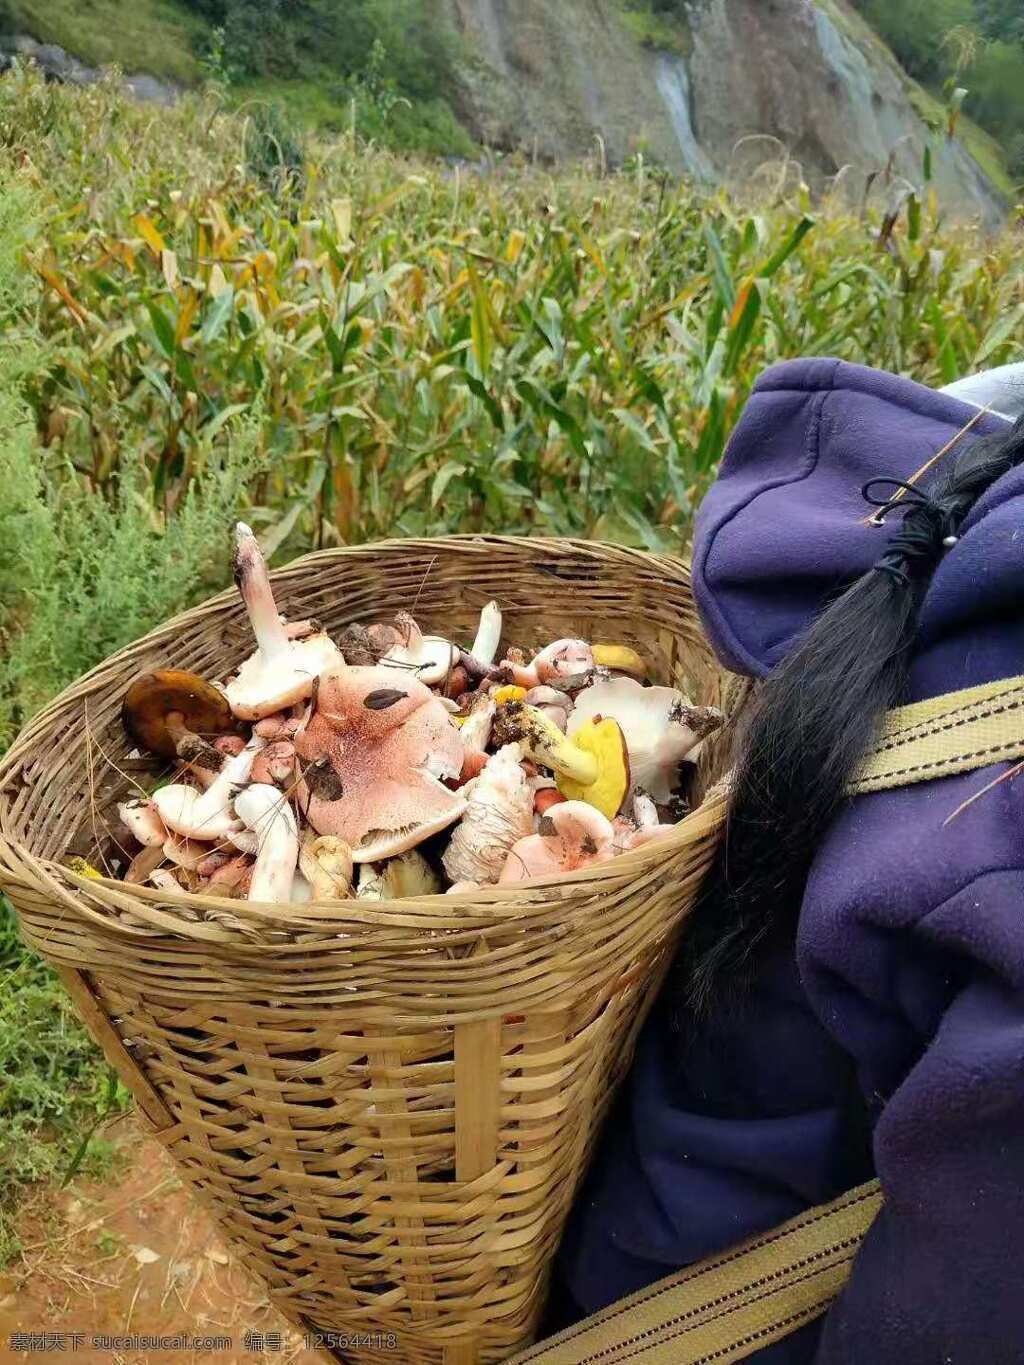 野生菌 青头菌 蘑菇 采摘 田园 农民 篮子 玉米 旅游摄影 国内旅游